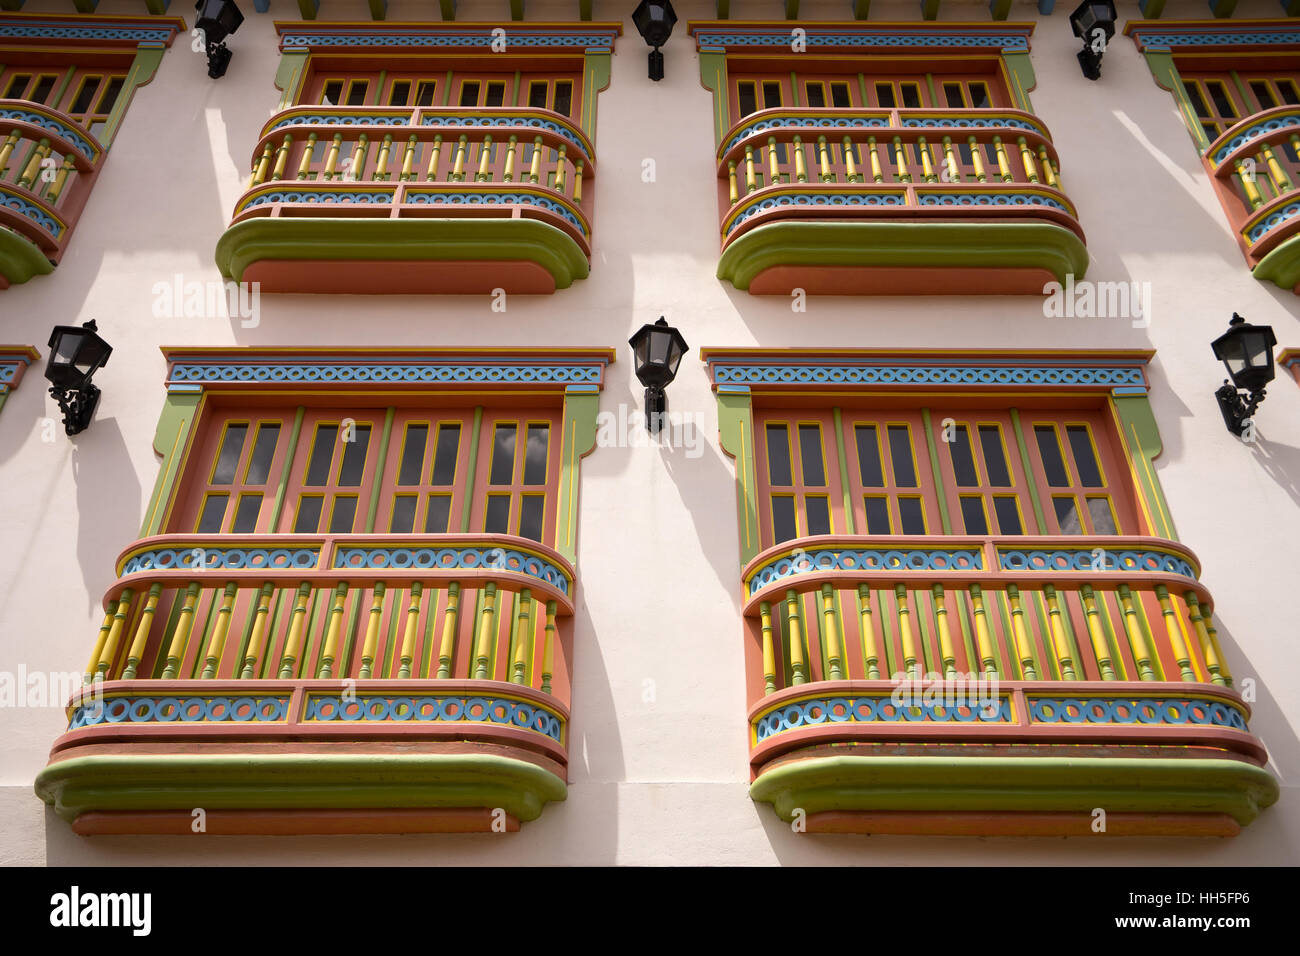 Balcons colorés d'une maison coloniale Colombie Guatape Banque D'Images